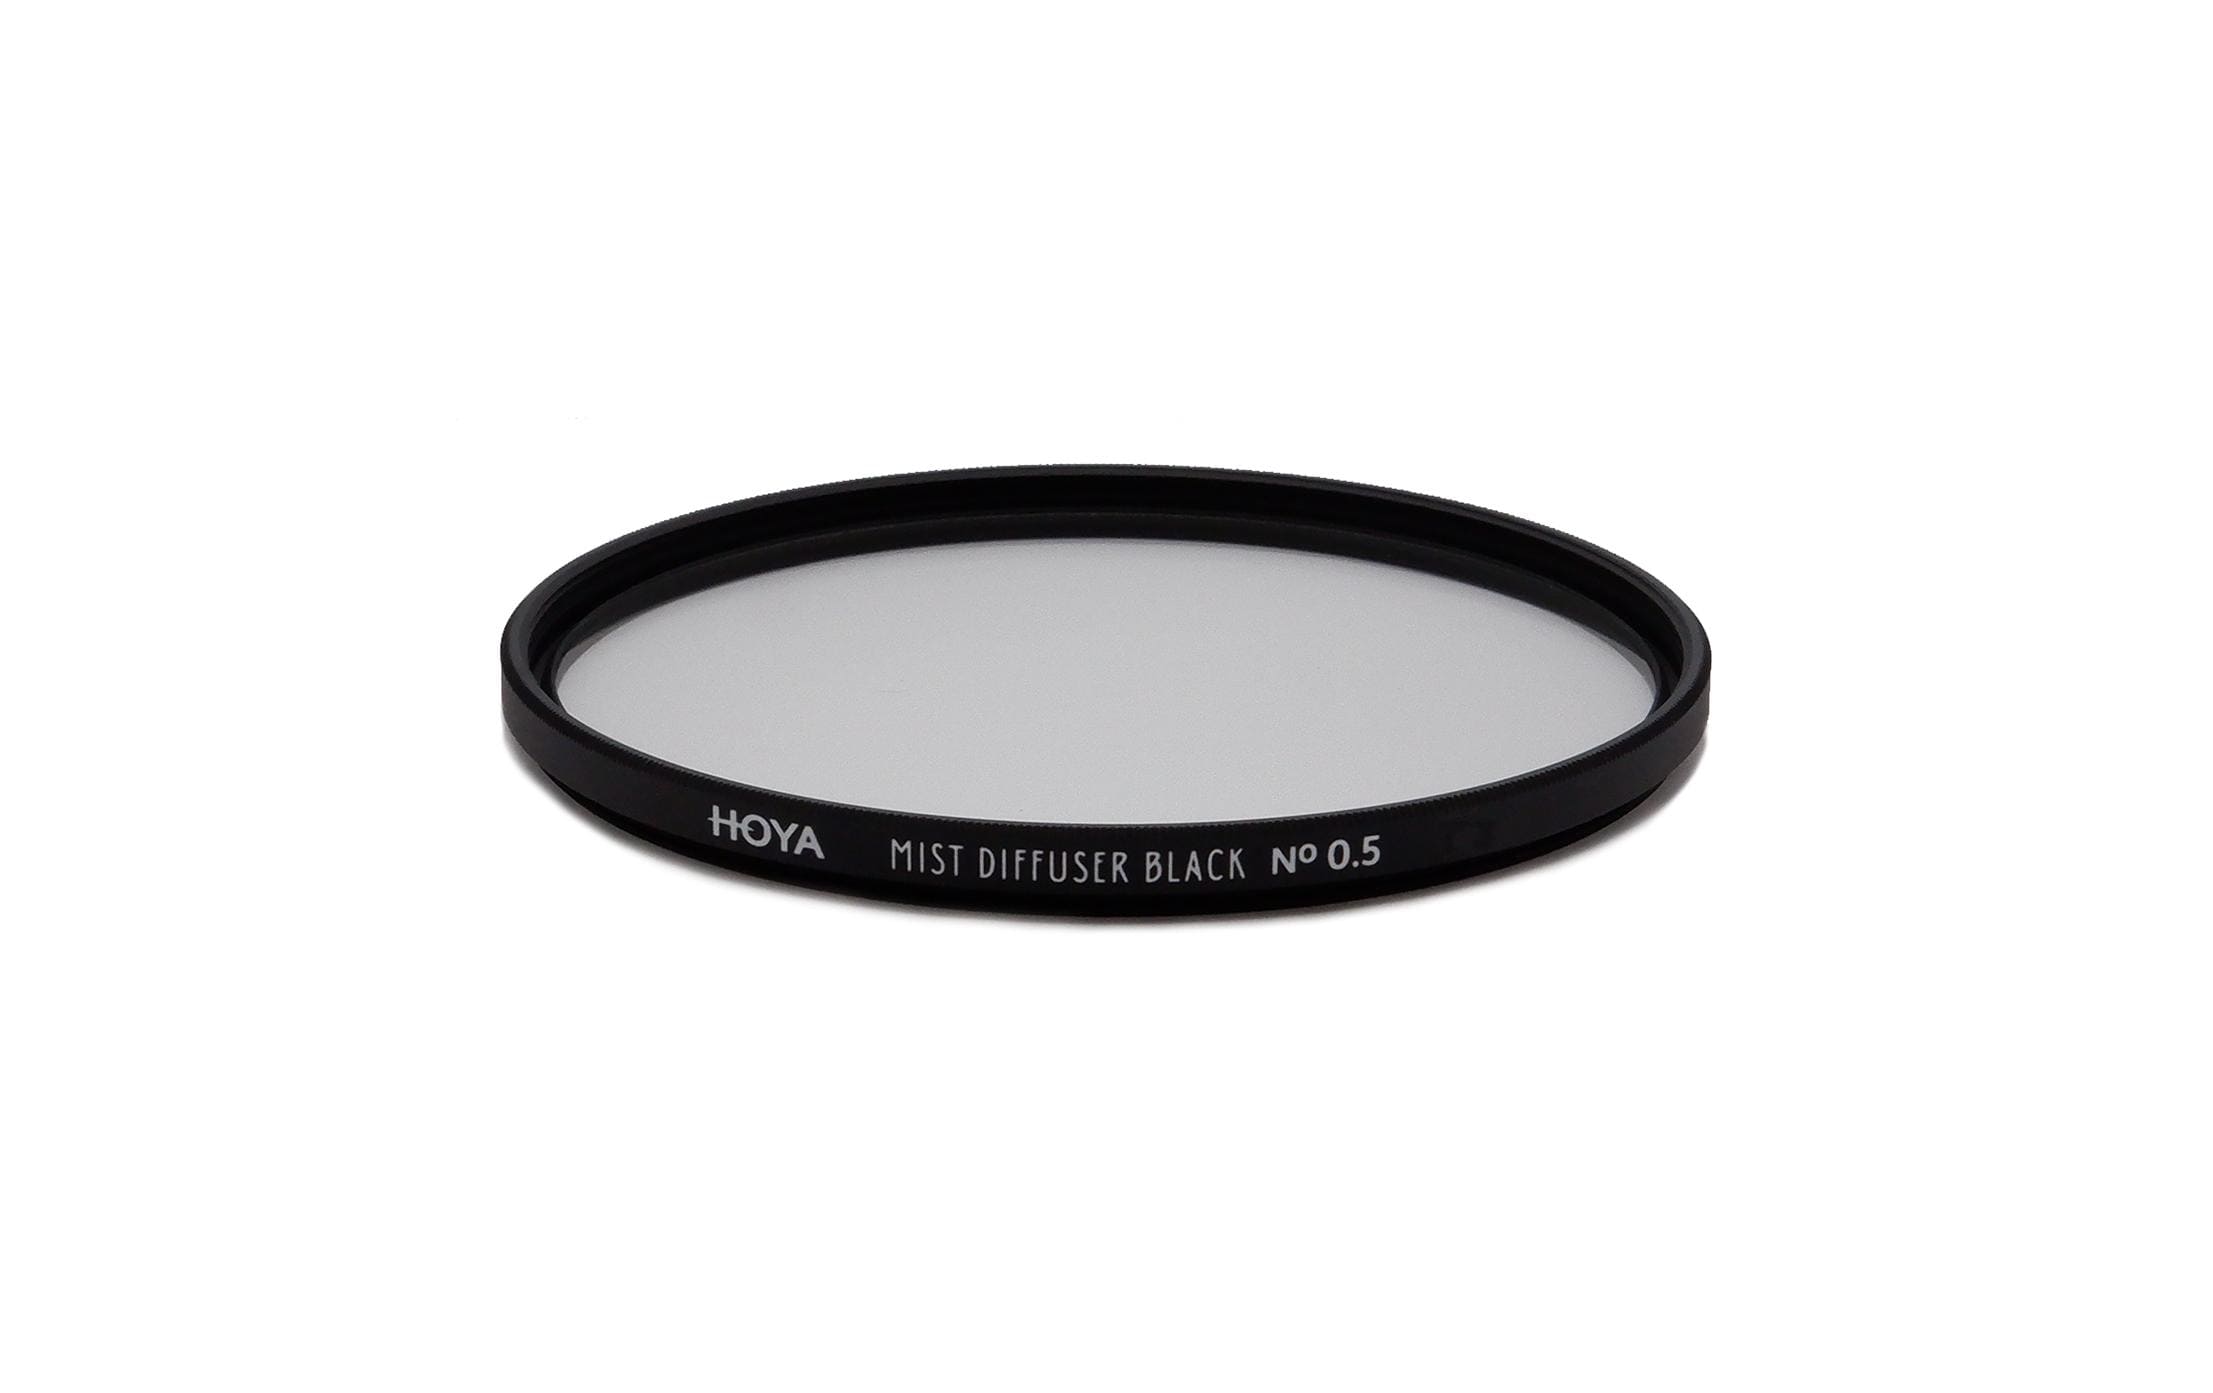 Hoya Objektivfilter Mist Diffuser Black No0.5 – 58 mm